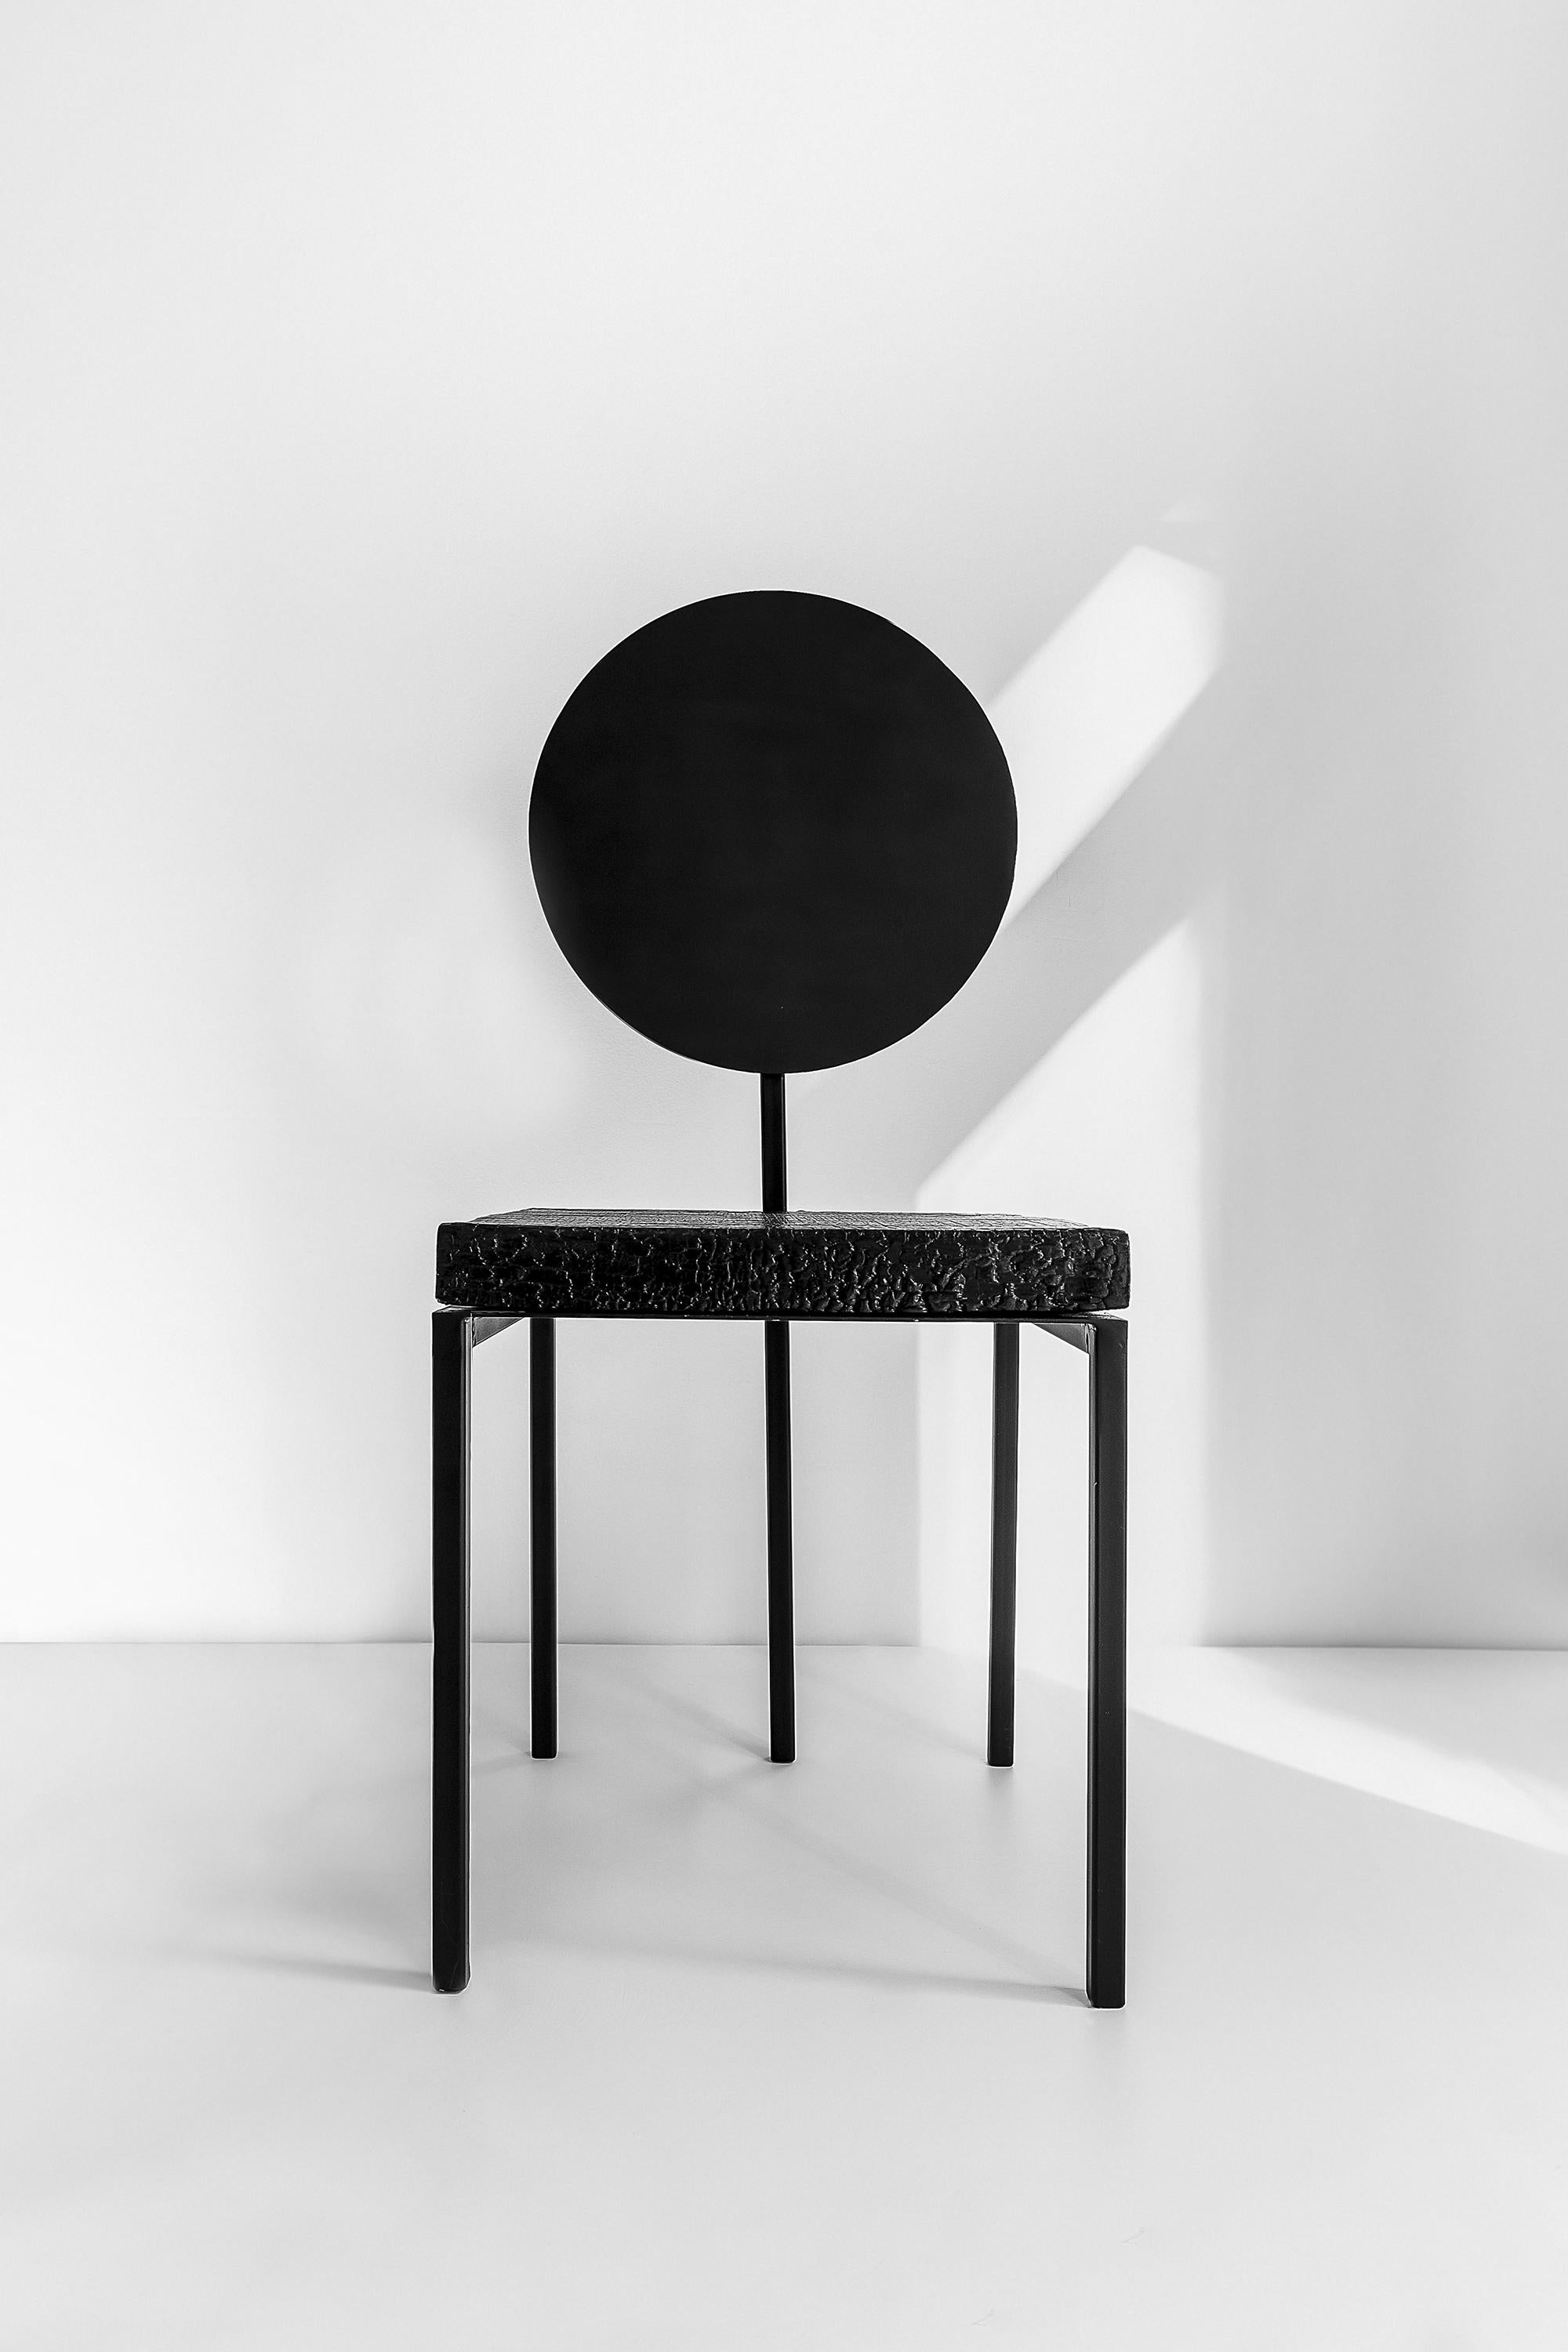 Les élégantes et exclusives chaises Pendolo combinent des géométries élémentaires mais en même temps audacieuses donnant vie à une assise singulière à cinq pieds. Le matériau bois est revisité par un procédé de brûlage superficiel. Les artisans